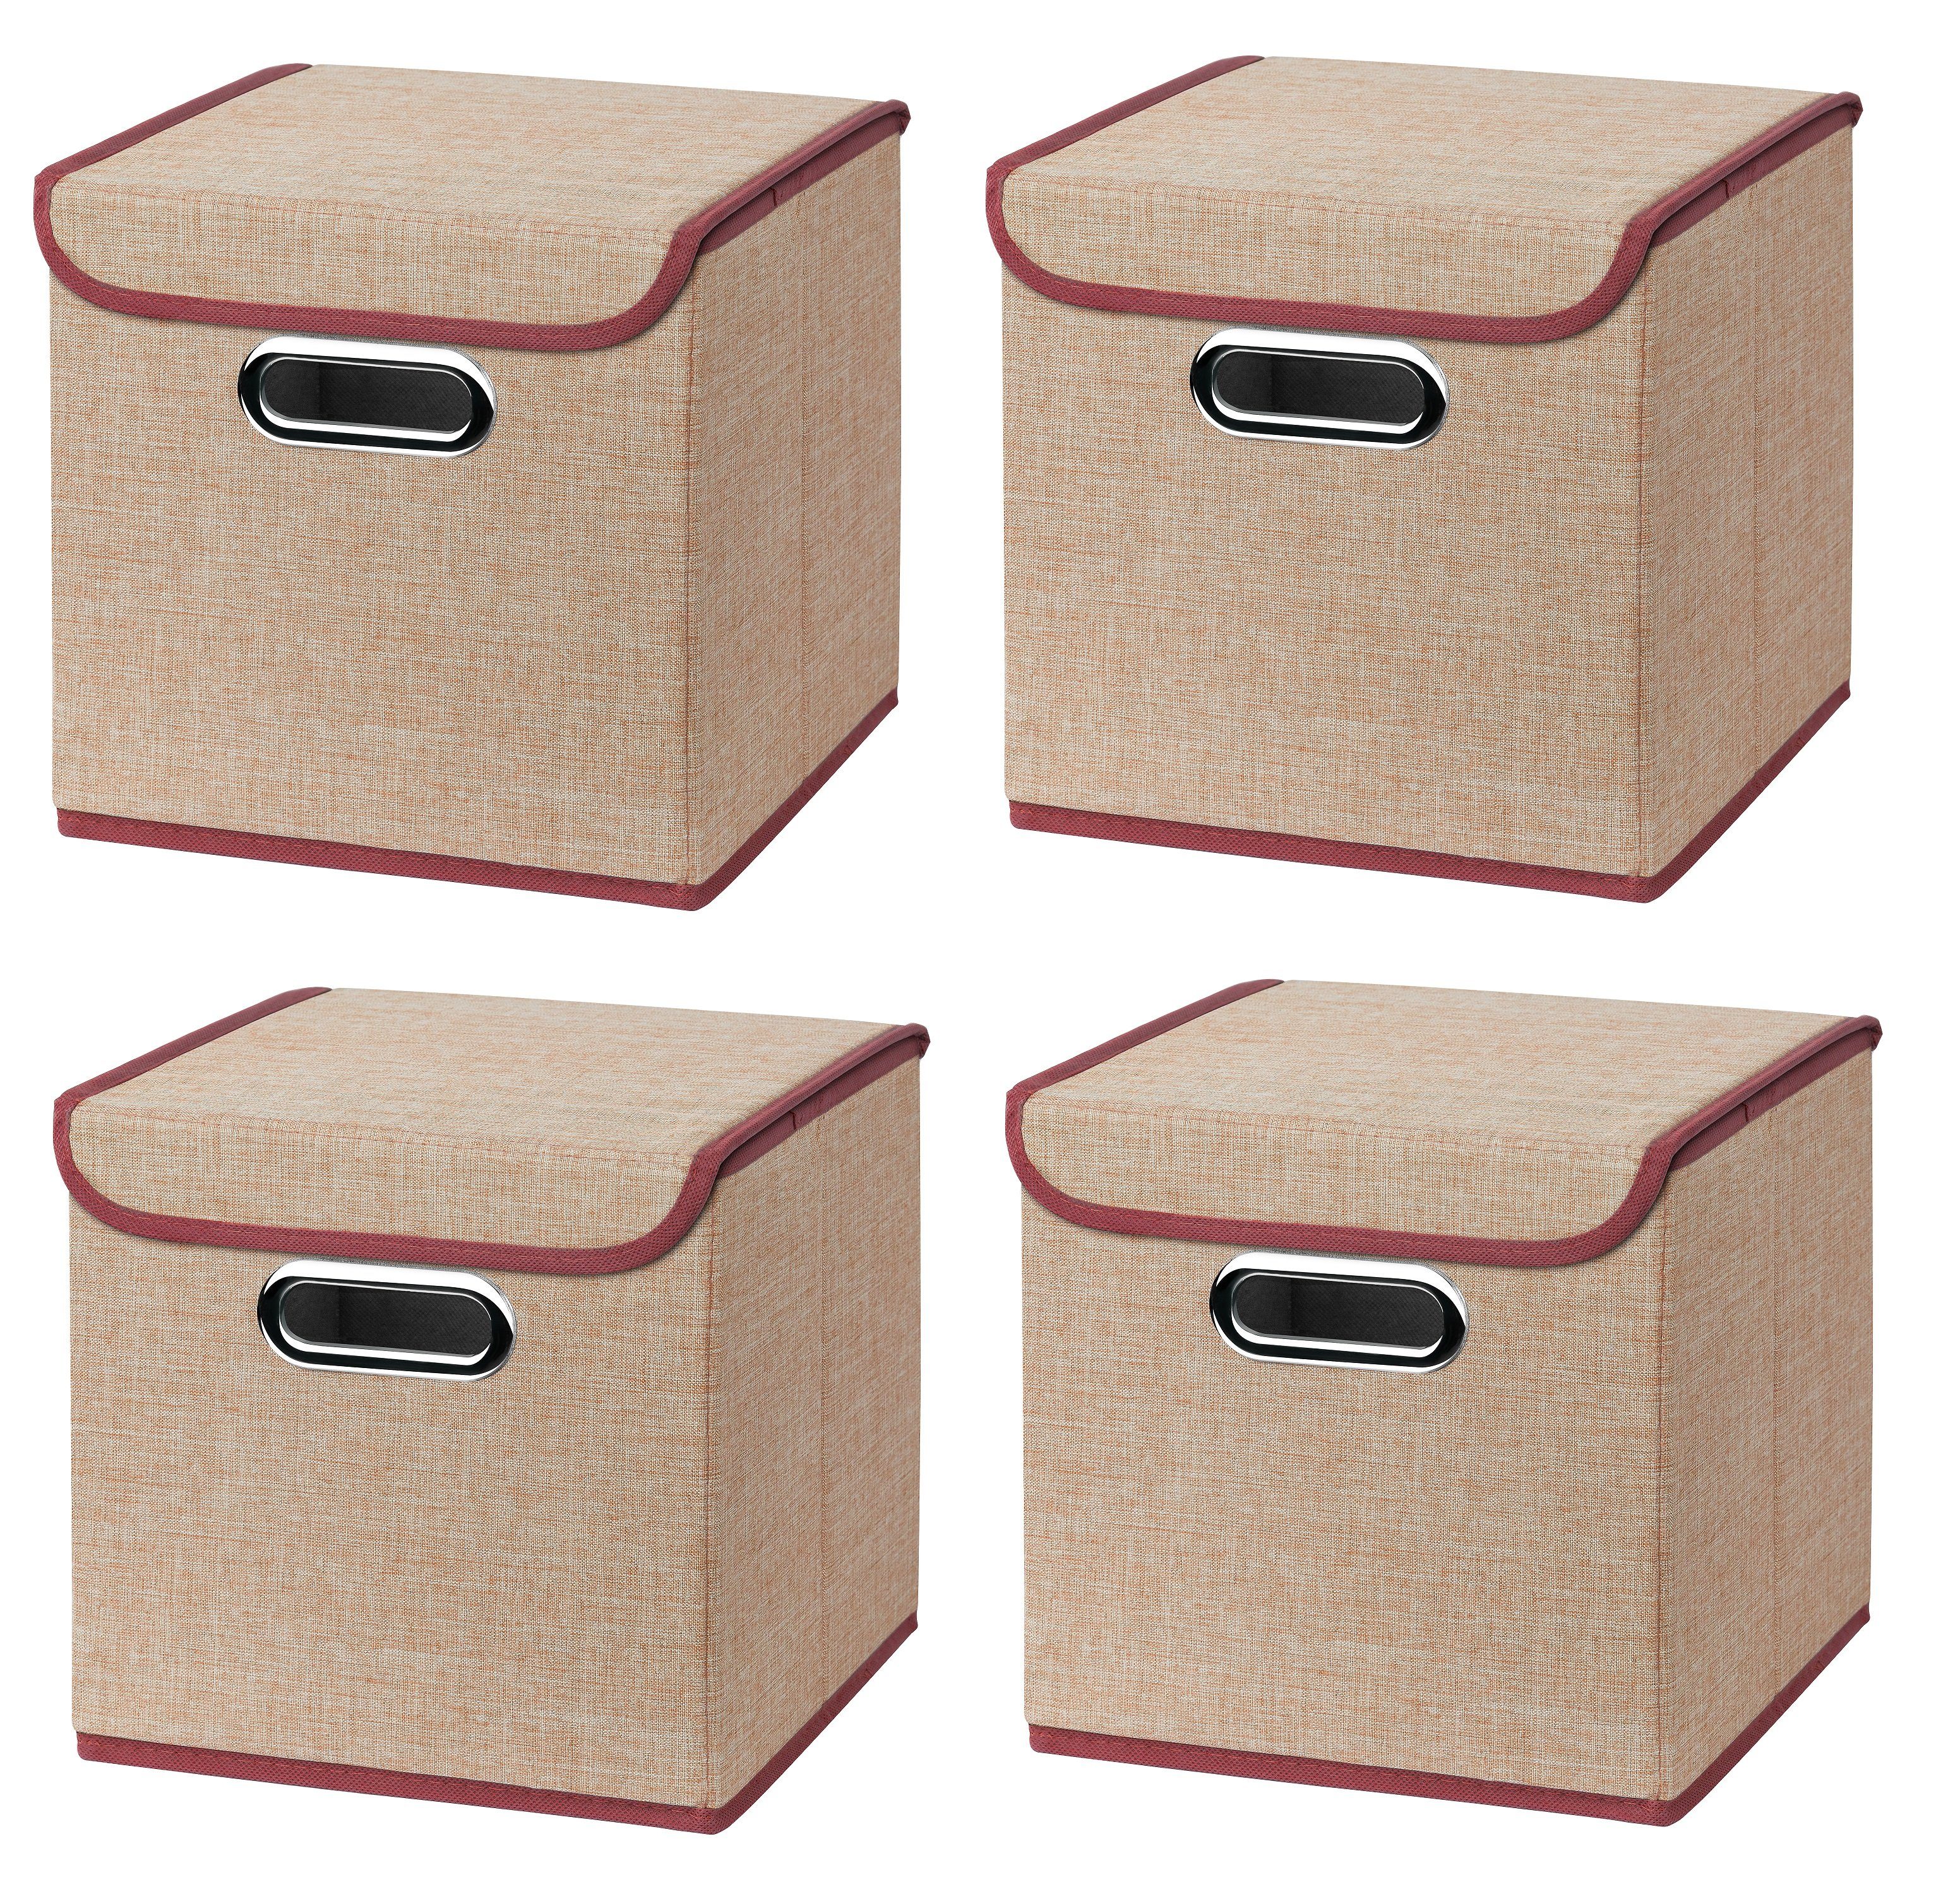 Faltbox 4 Stück Faltboxen 25 x 25 x 25 cm Stoffboxen faltbar mit Deckel in verschiedenen Farben (4er SET 25x25x25) 25cm